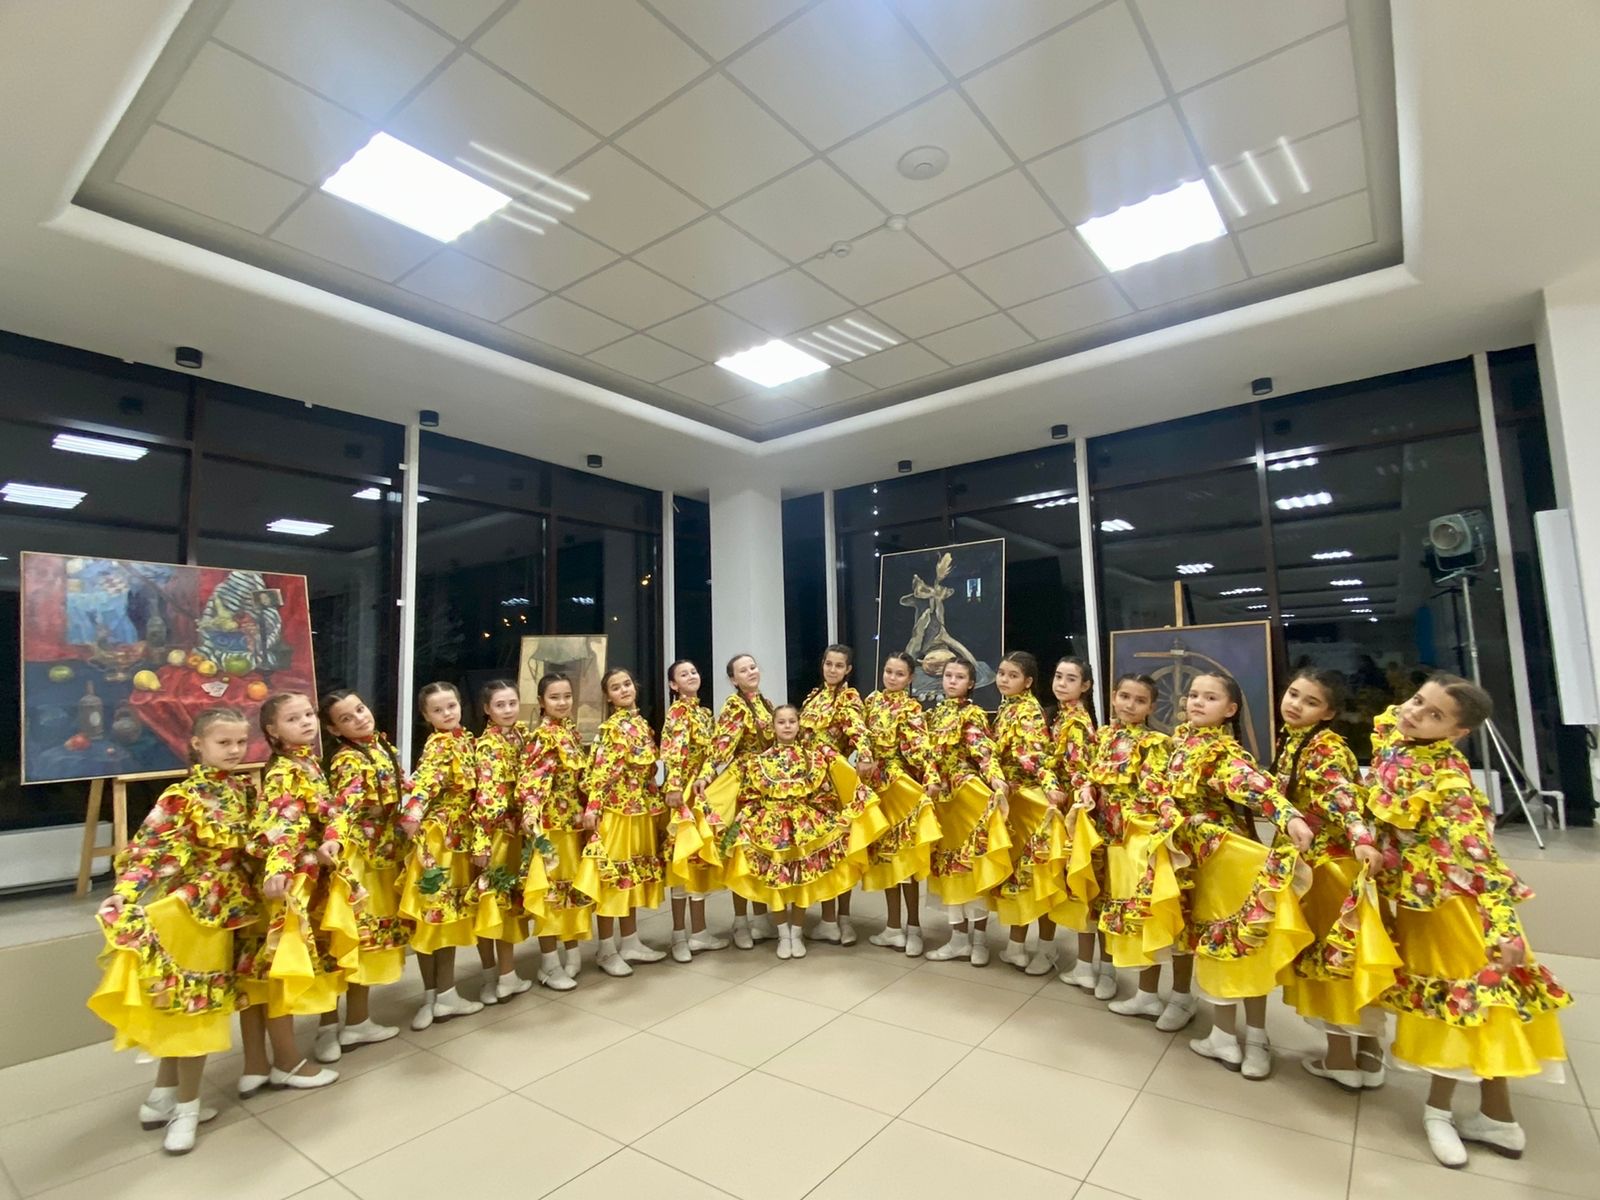 Высокогорские коллективы приняли участие в Международном конкурс-фестивале “Christmas time”